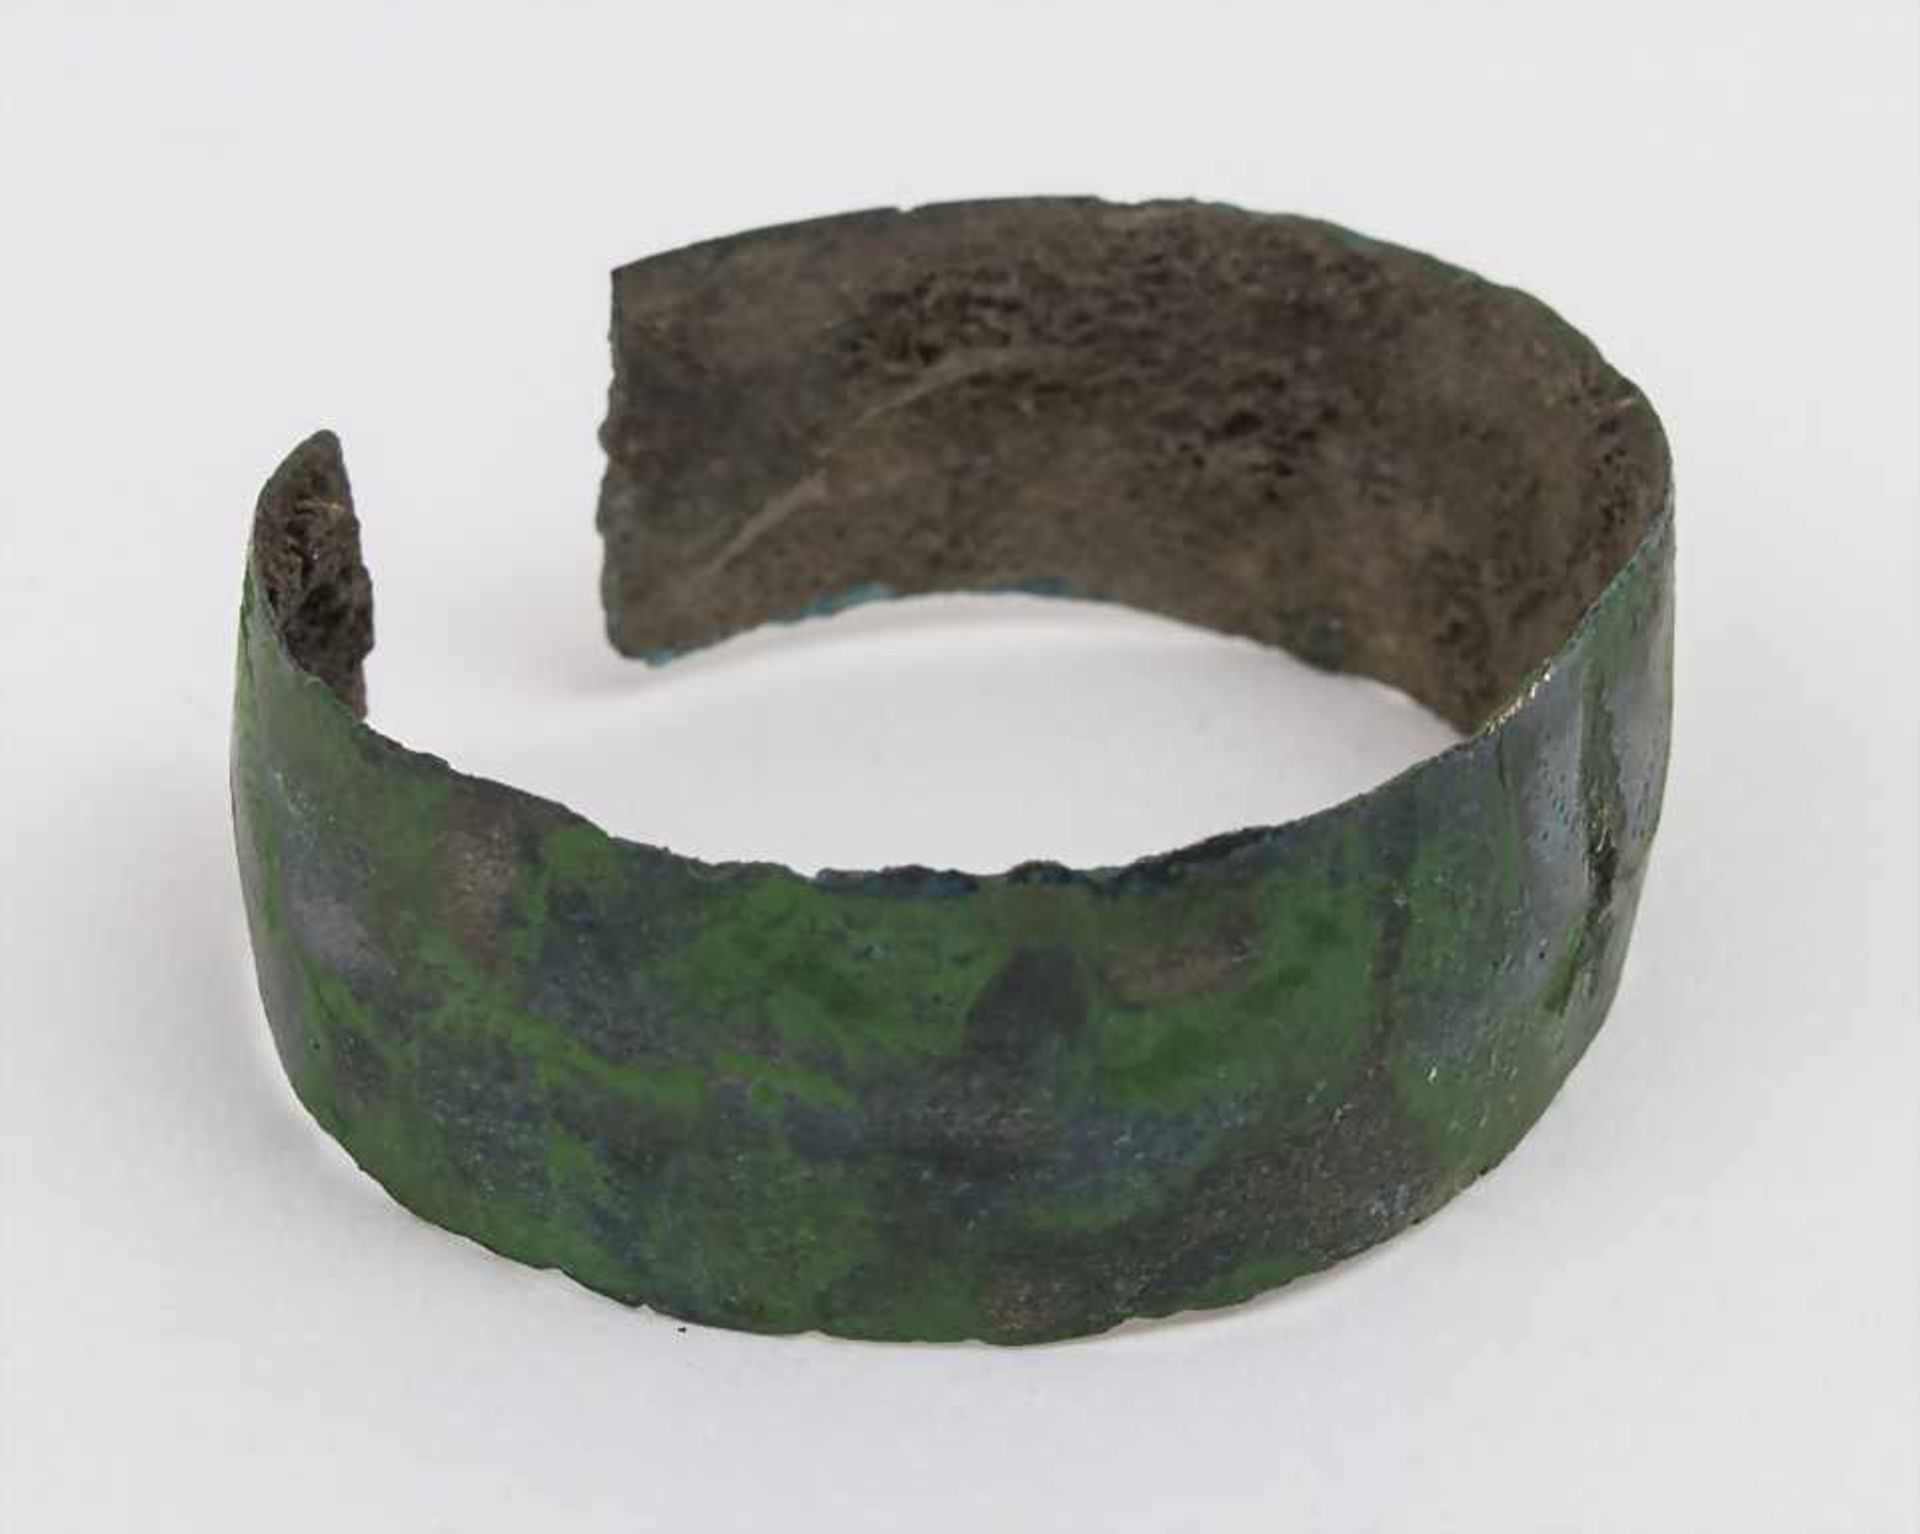 Römischer Bronze-Armreif / A Roman bronze bracelet Maße: D. 3,8 cm, B. 1,5 cm,Herkunft: aus alter